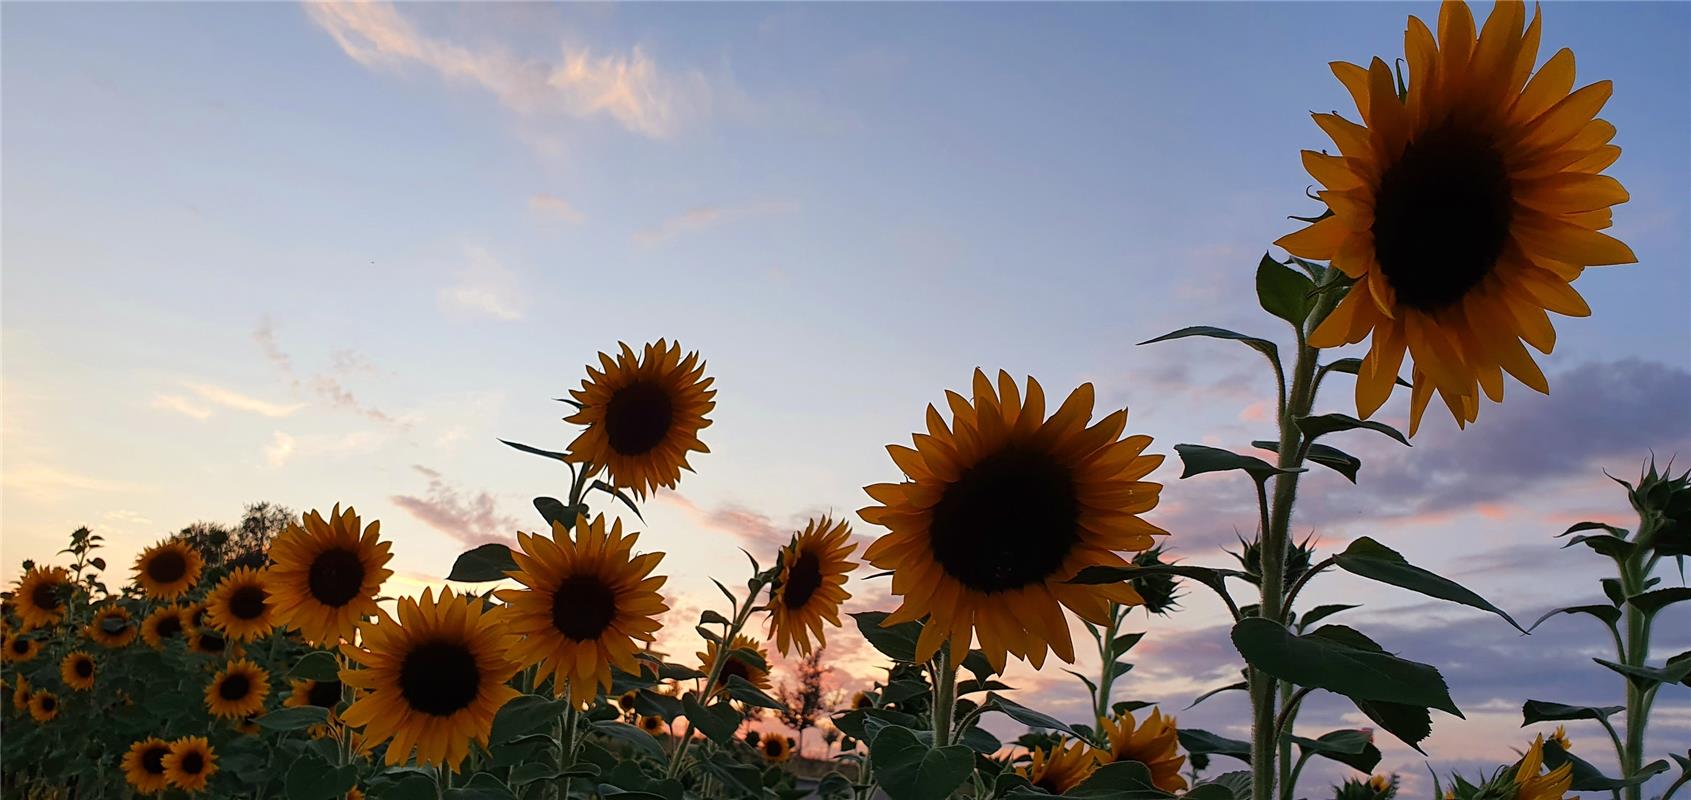 Sonnenblumenfamilie nennt die Herrenbergerin Gabi Brenner dieses Foto. 